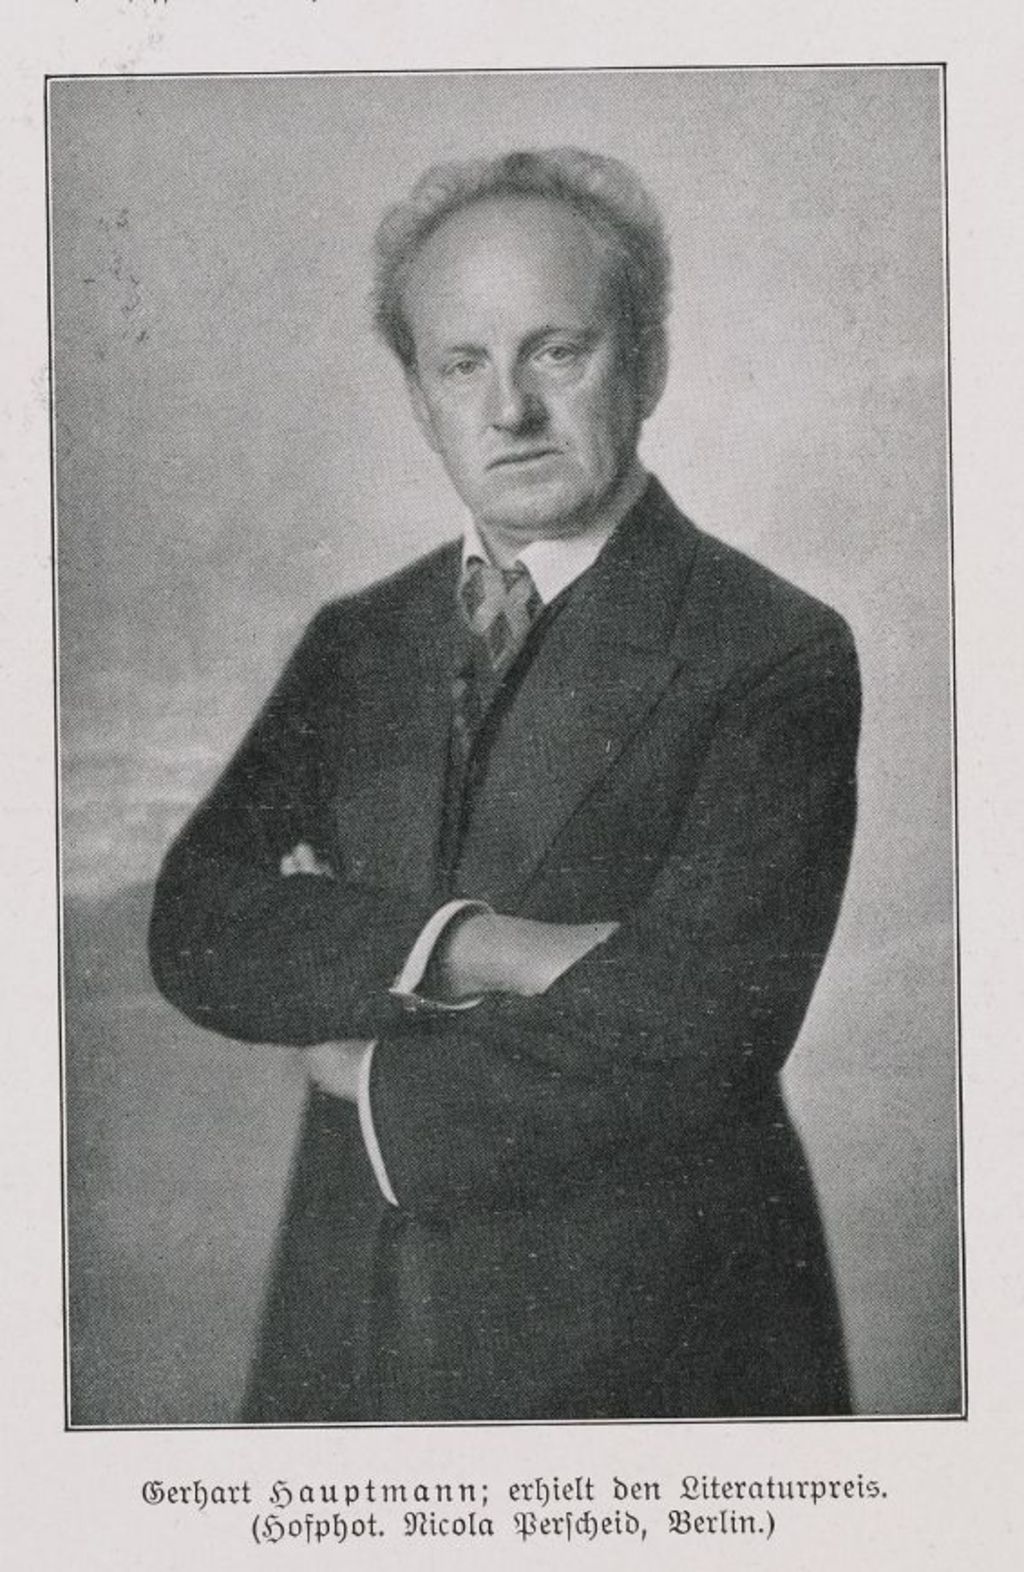 Druckgut: "Gerhart Hauptmann erhielt den Literaturpreis", 1912